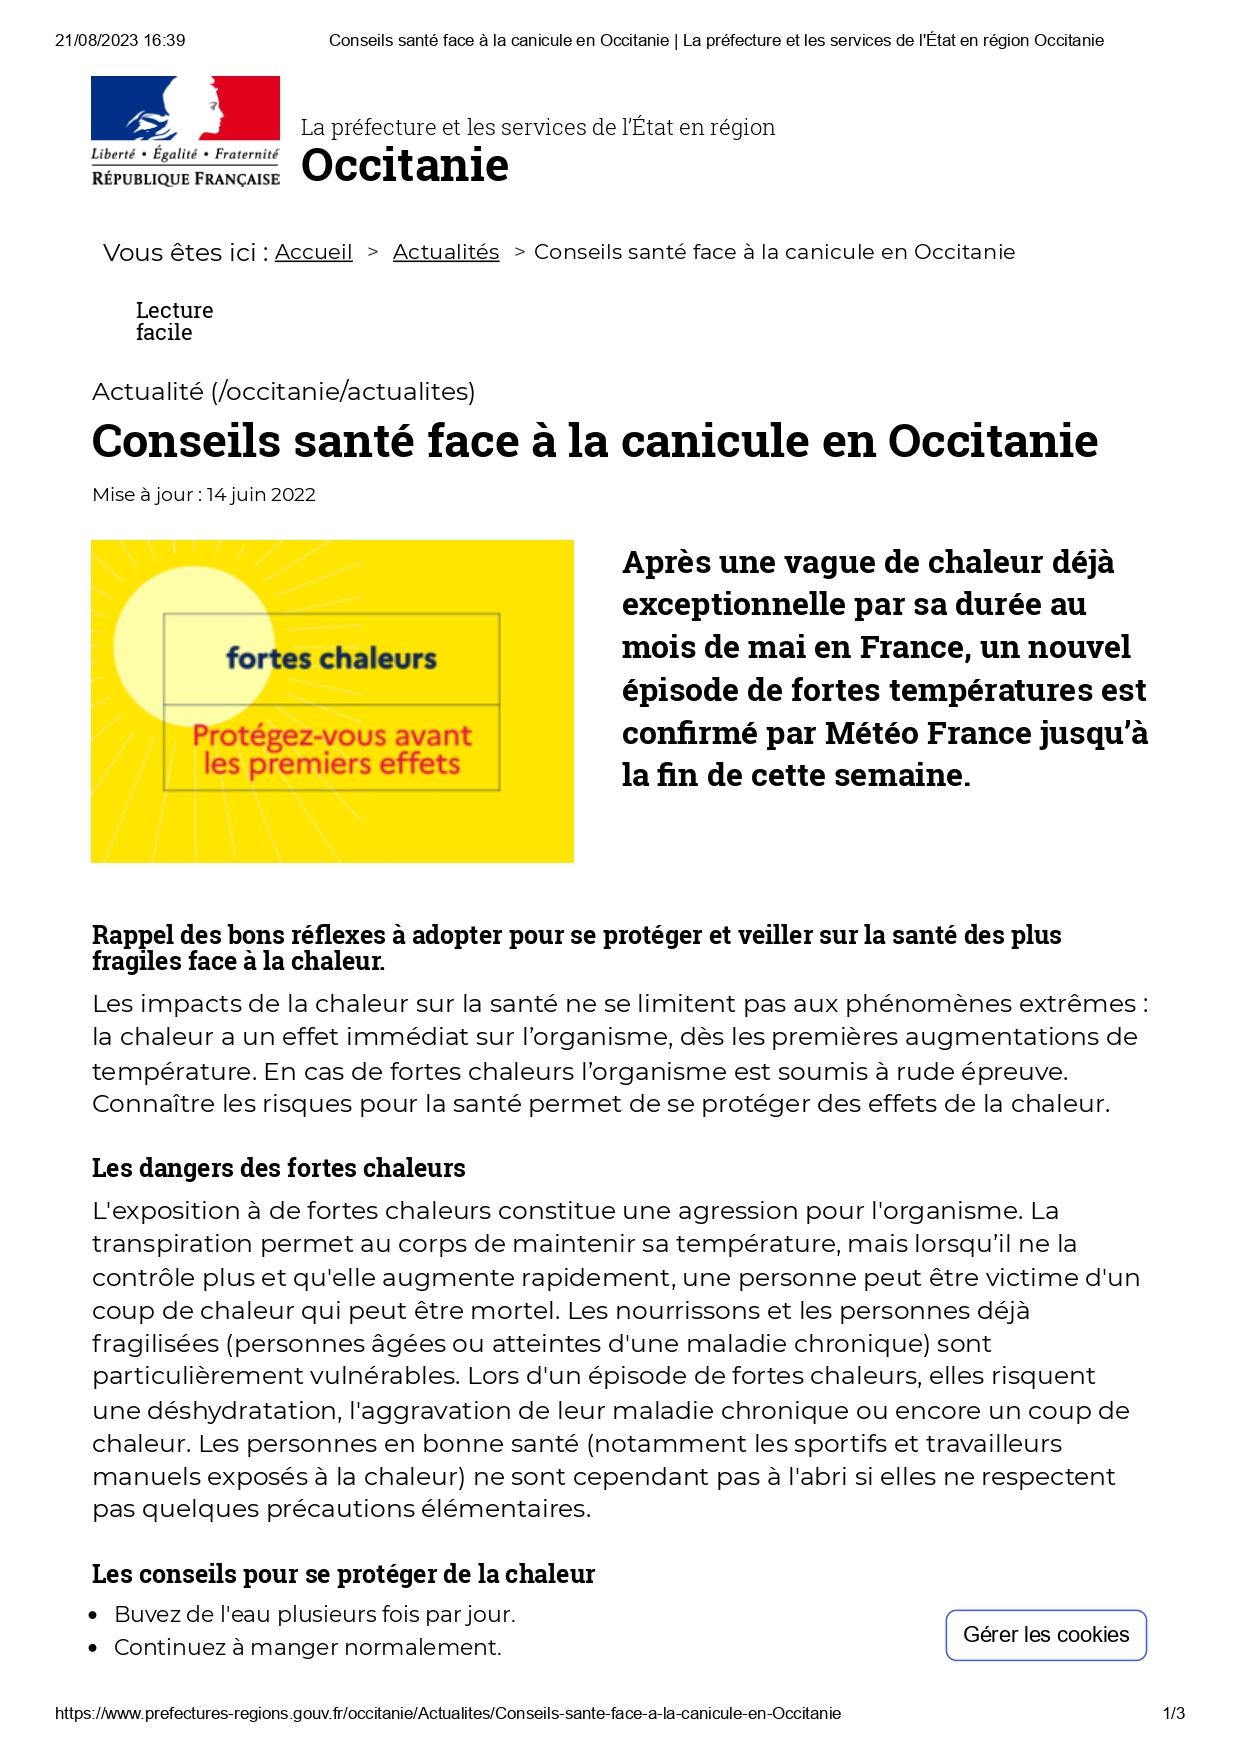 1conseils sante face a la canicule en occitanie la prefecture et les services de l etat en region occitanie page 0001